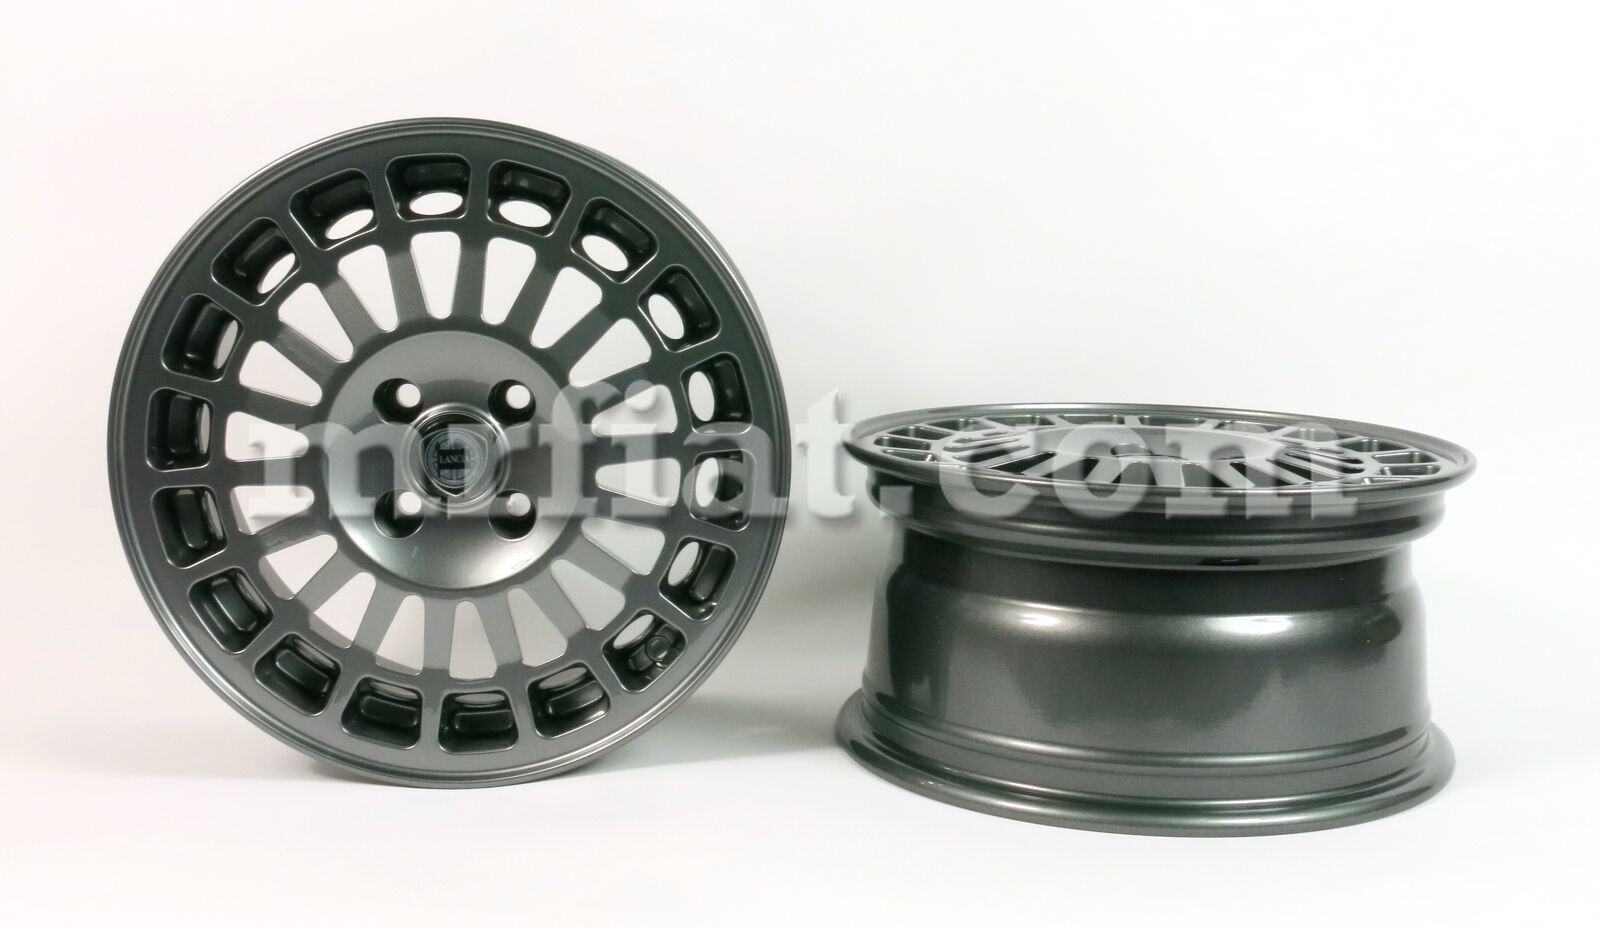 Lancia Delta Montecarlo HF Integrale 7 x 15 4x98 Silver Replica Wheel Set New